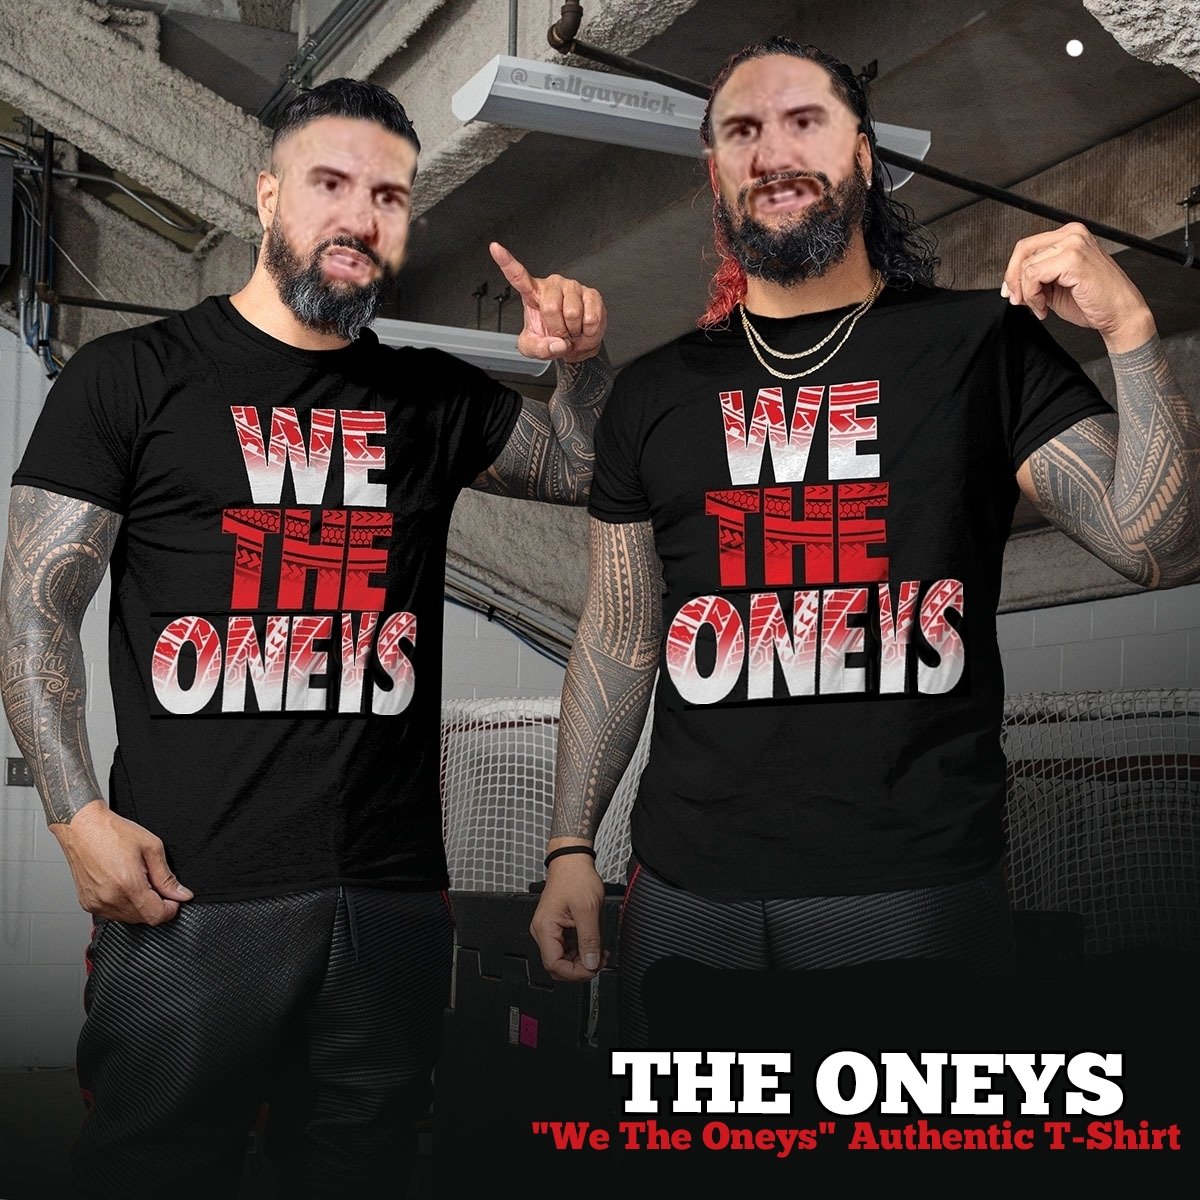 'We The Oneys' - The Oneys 

#oneylorcan #theusos #TheBloodline #wwe #wetheones #wetheoneys